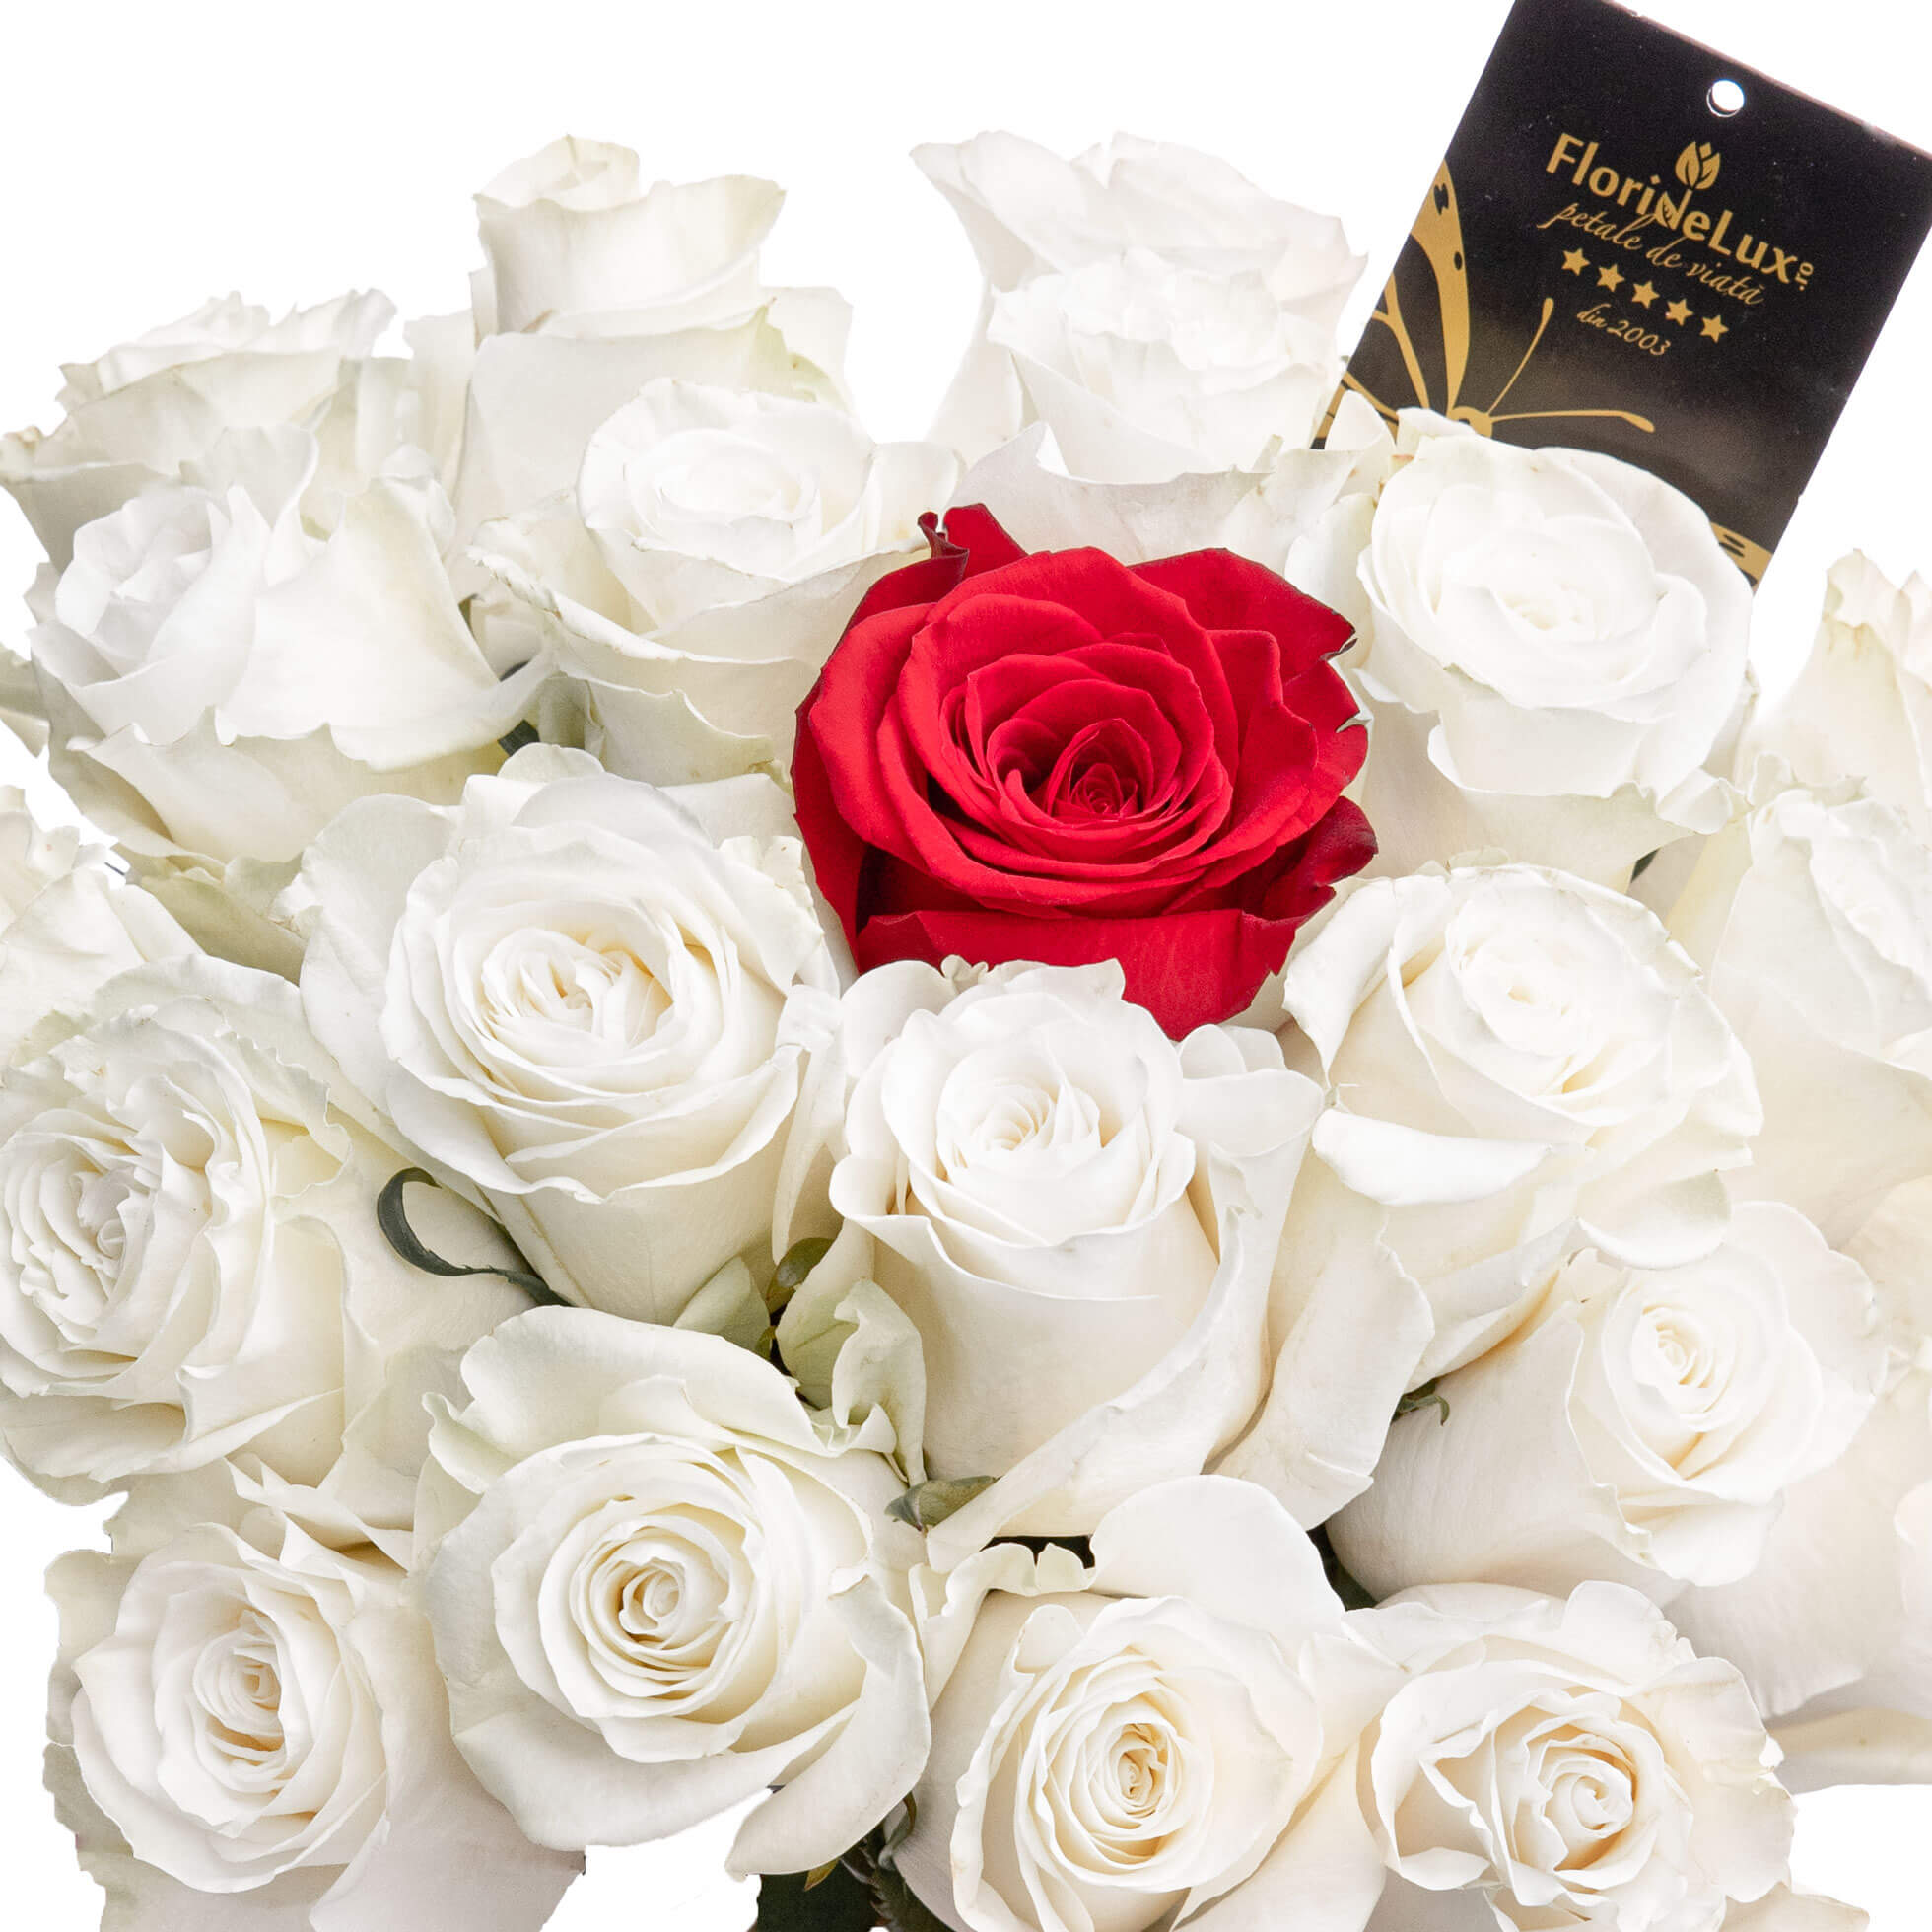 Buchet trandafiri albi si unul rosu